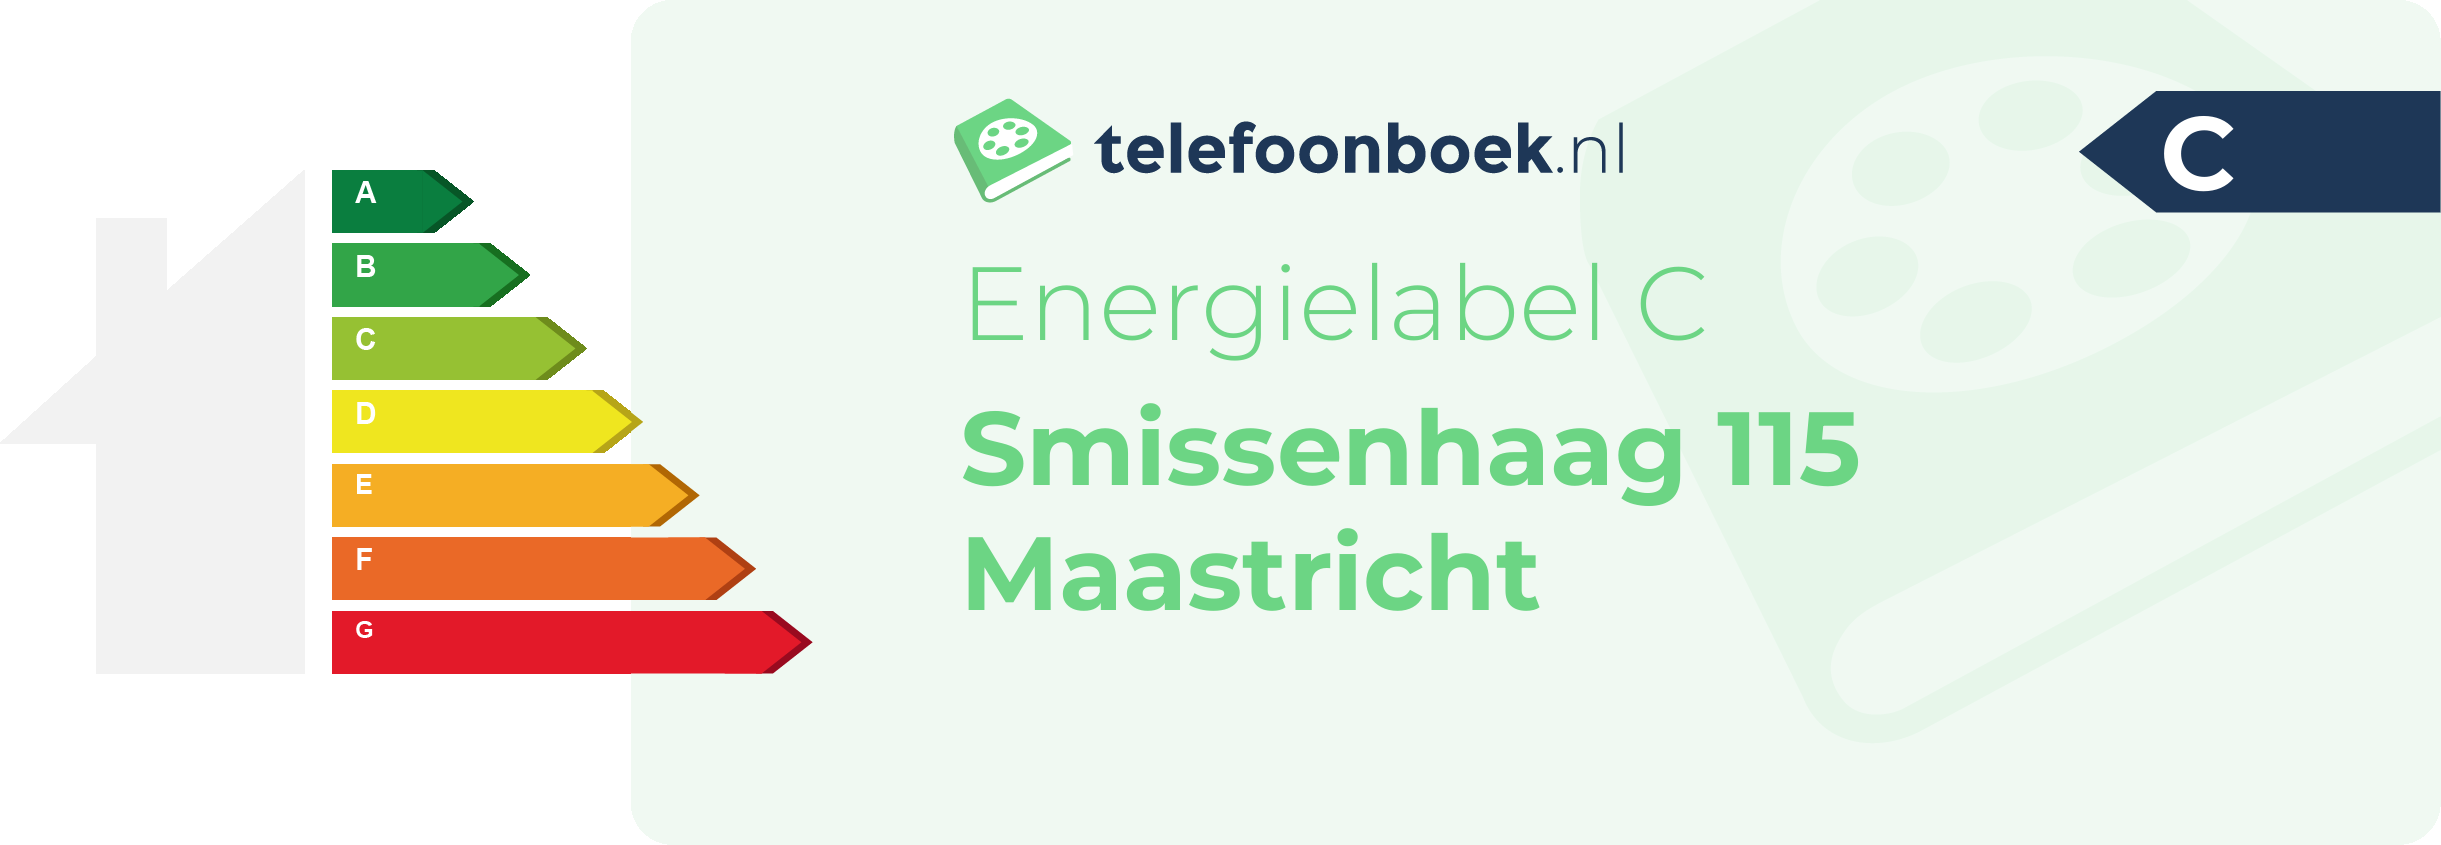 Energielabel Smissenhaag 115 Maastricht